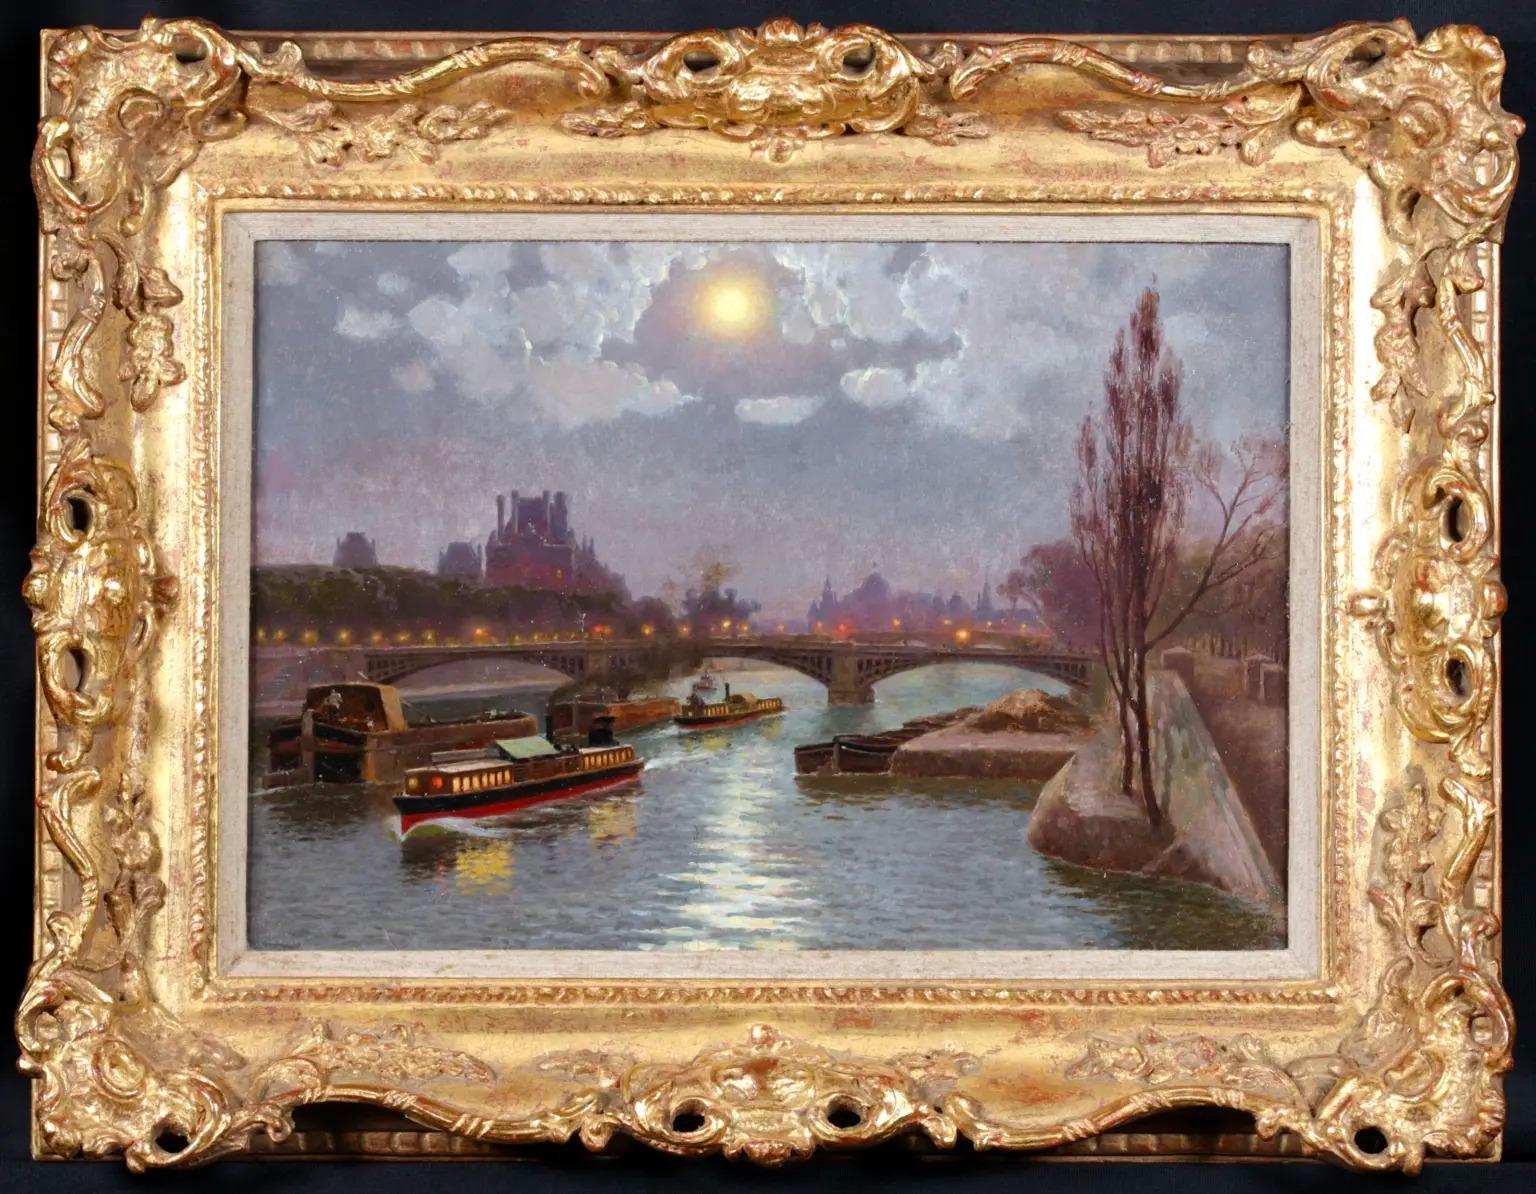 Landscape Painting William Baptiste Baird - On the Seine - Peinture à l'huile impressionniste de paysage fluvial de William Baird